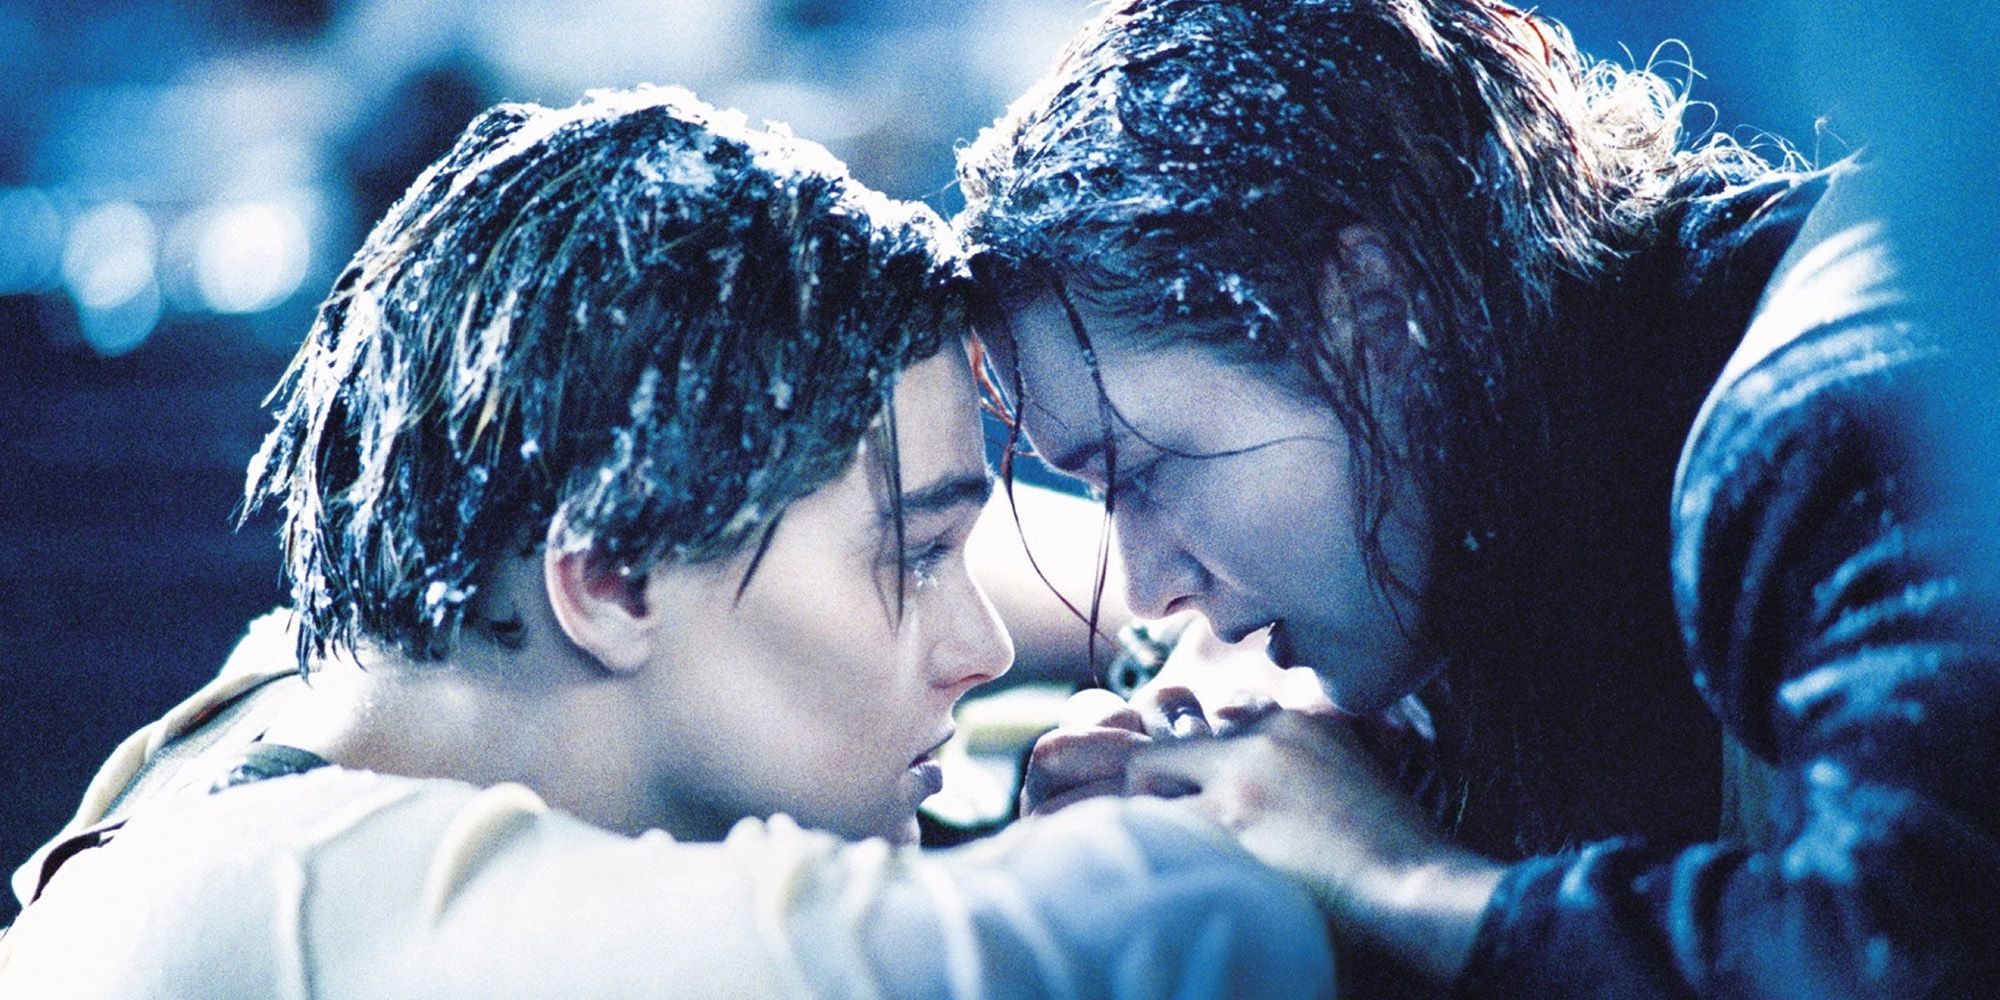 Leonardo DiCaprio Almost Lost Titanic Role Over Refusing A Screen Test